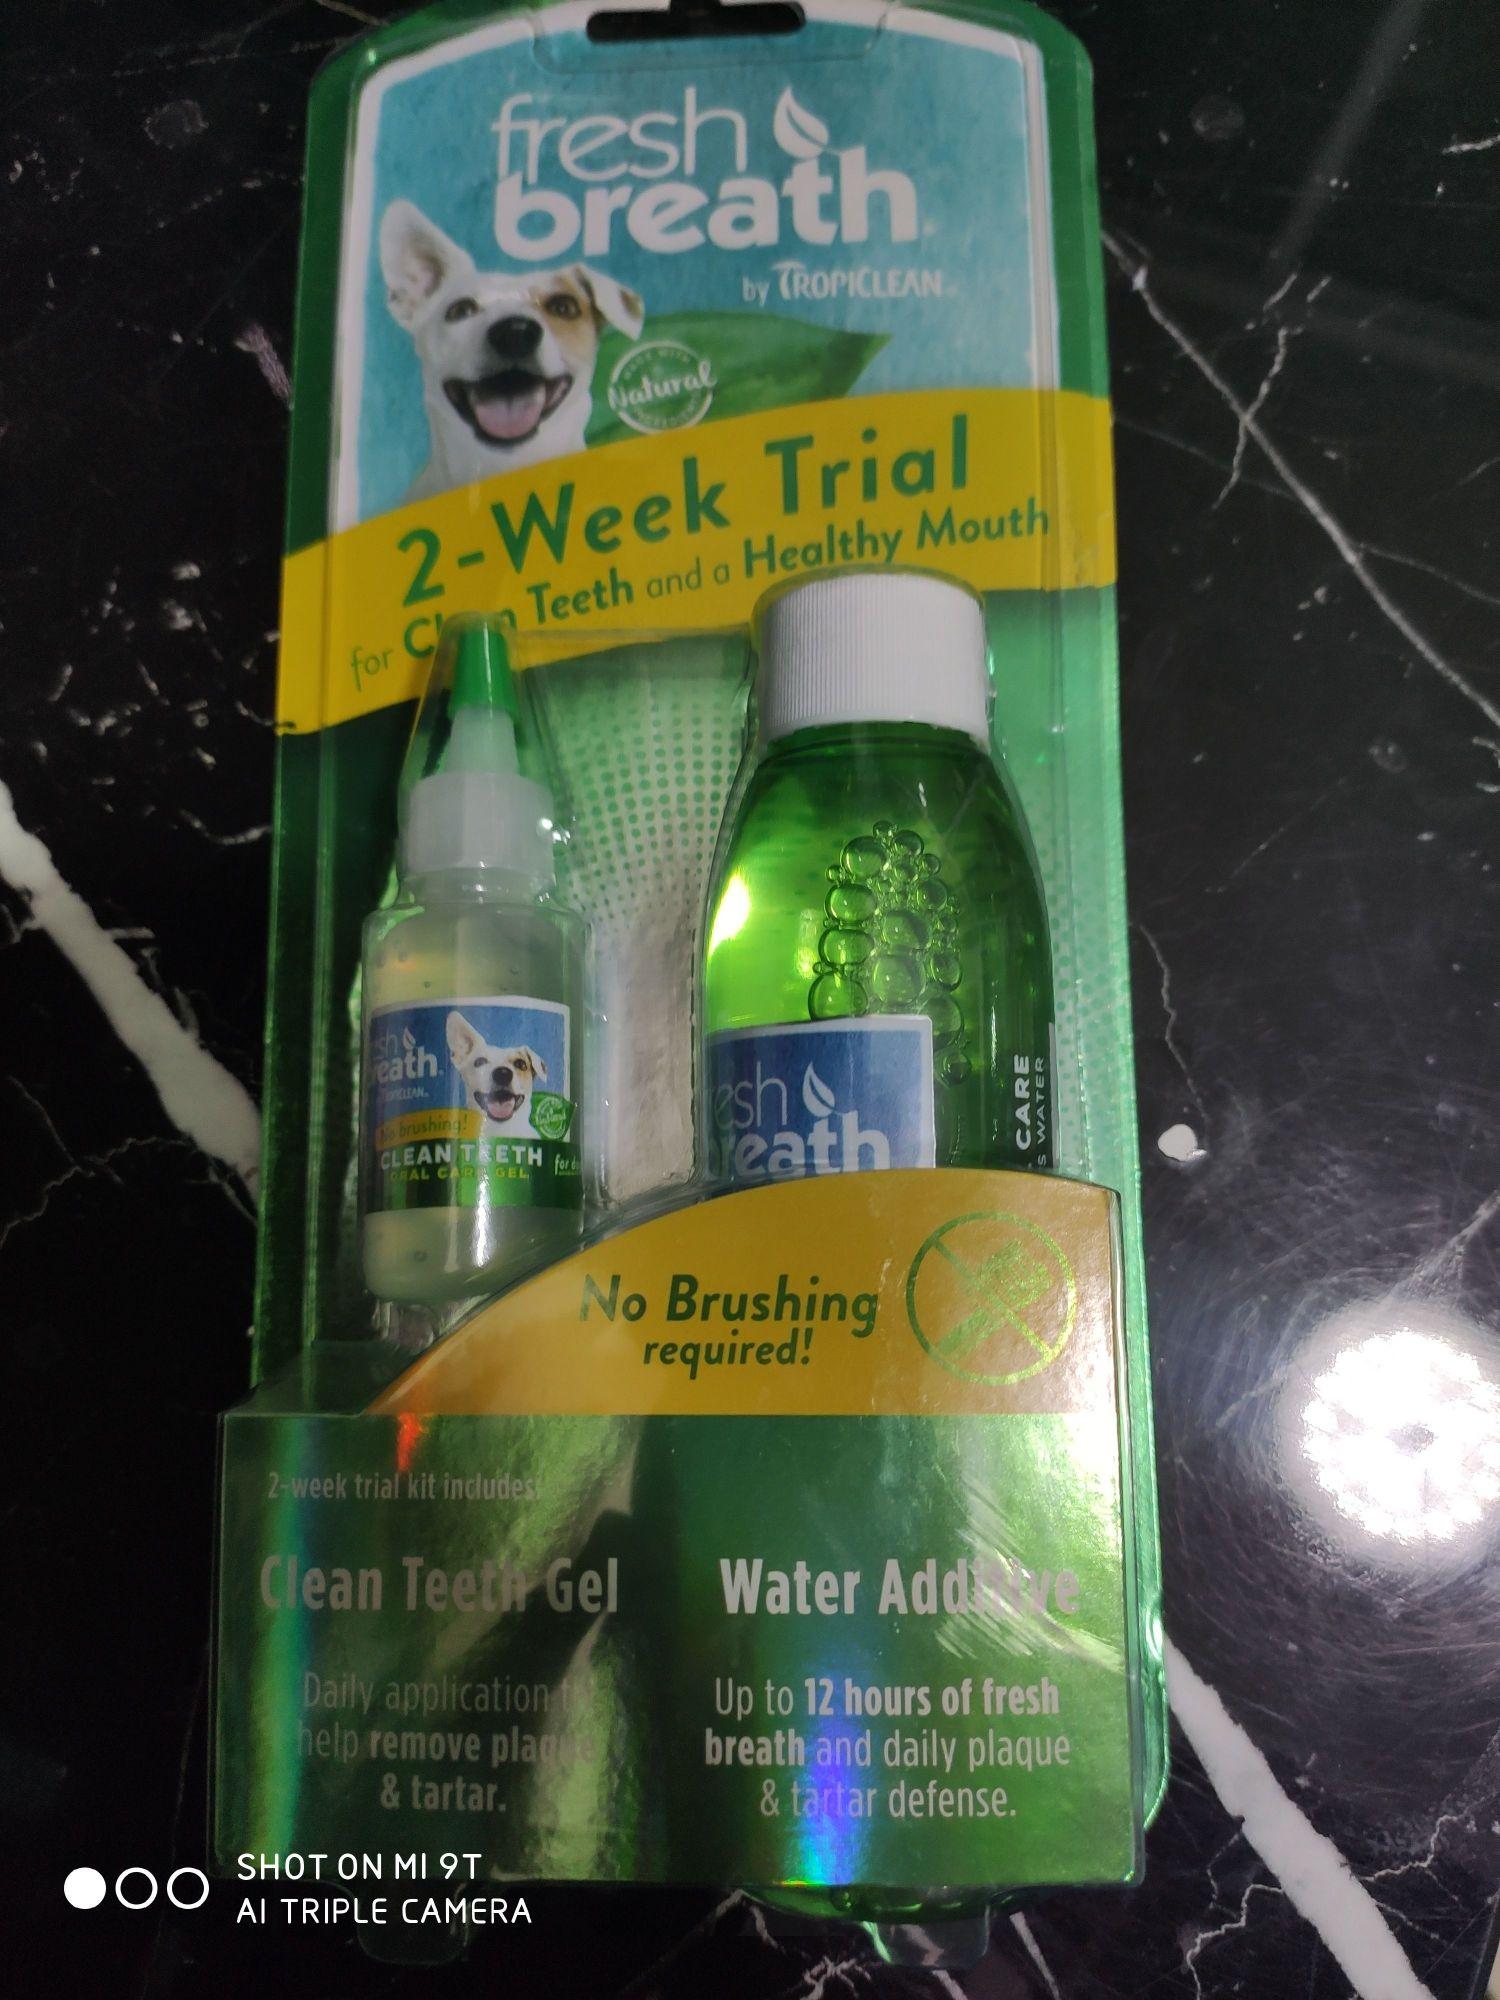 Tropiclean Water Additive 4 oz ที่ผสมน้ำและ Clean teeth gel 0.5 oz ลดคราบหินปูน สุนัข ลดกลิ่นปาก สำหรับสุนัขและแมว